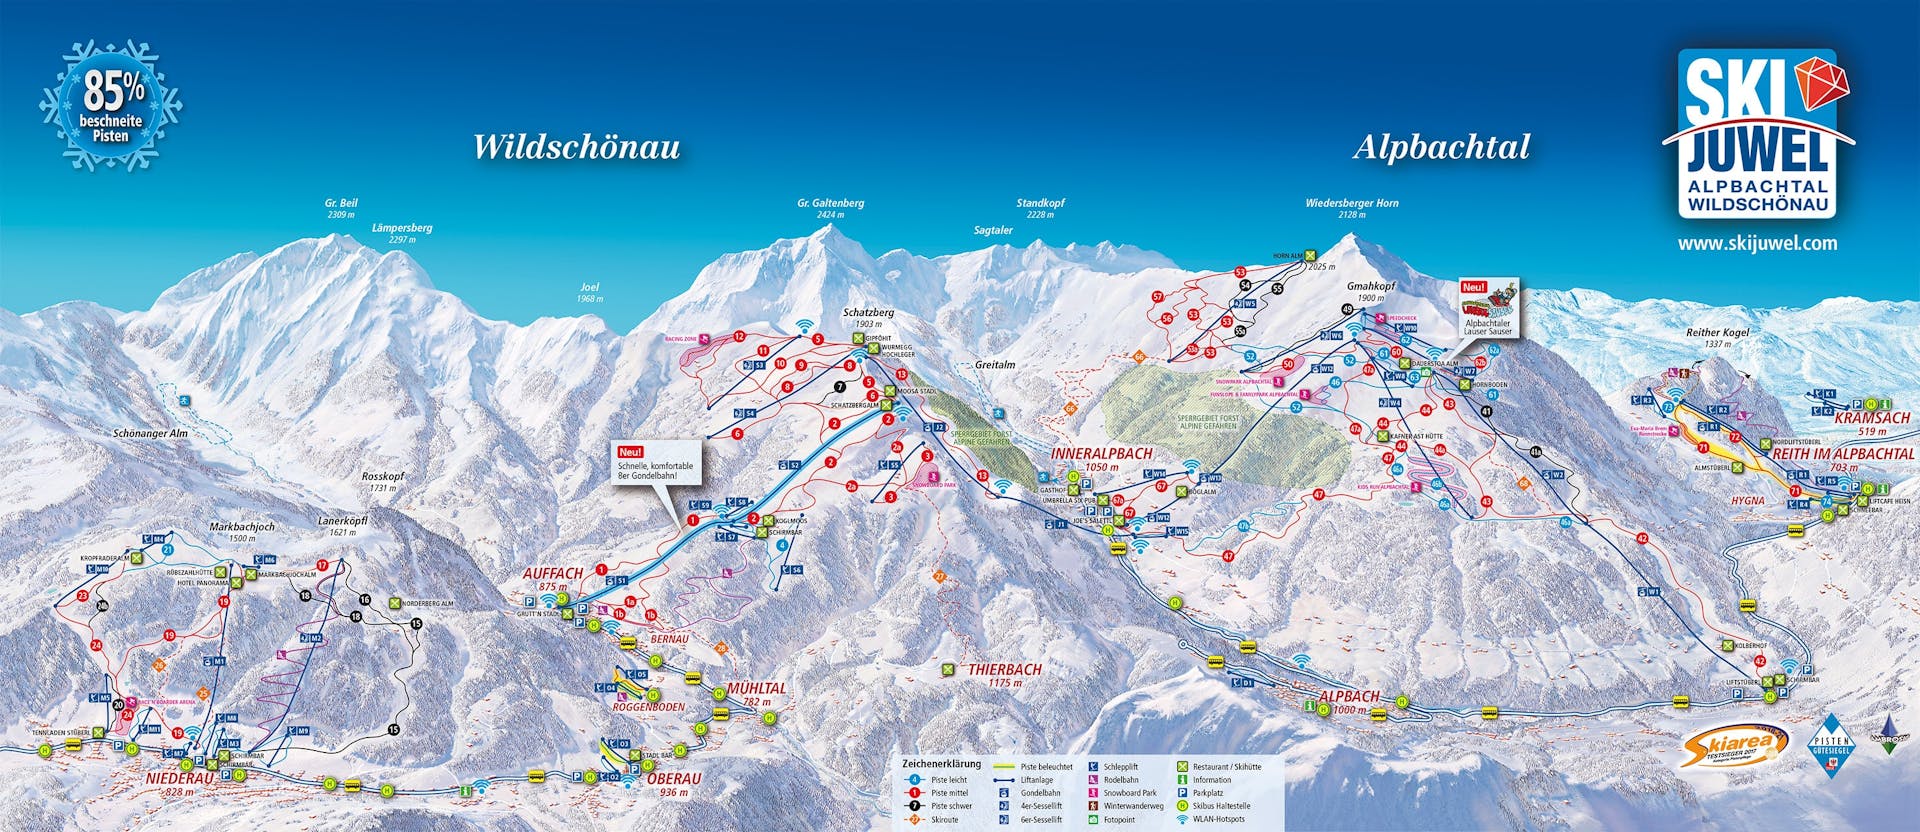 Reith im Alpbachtal ski map